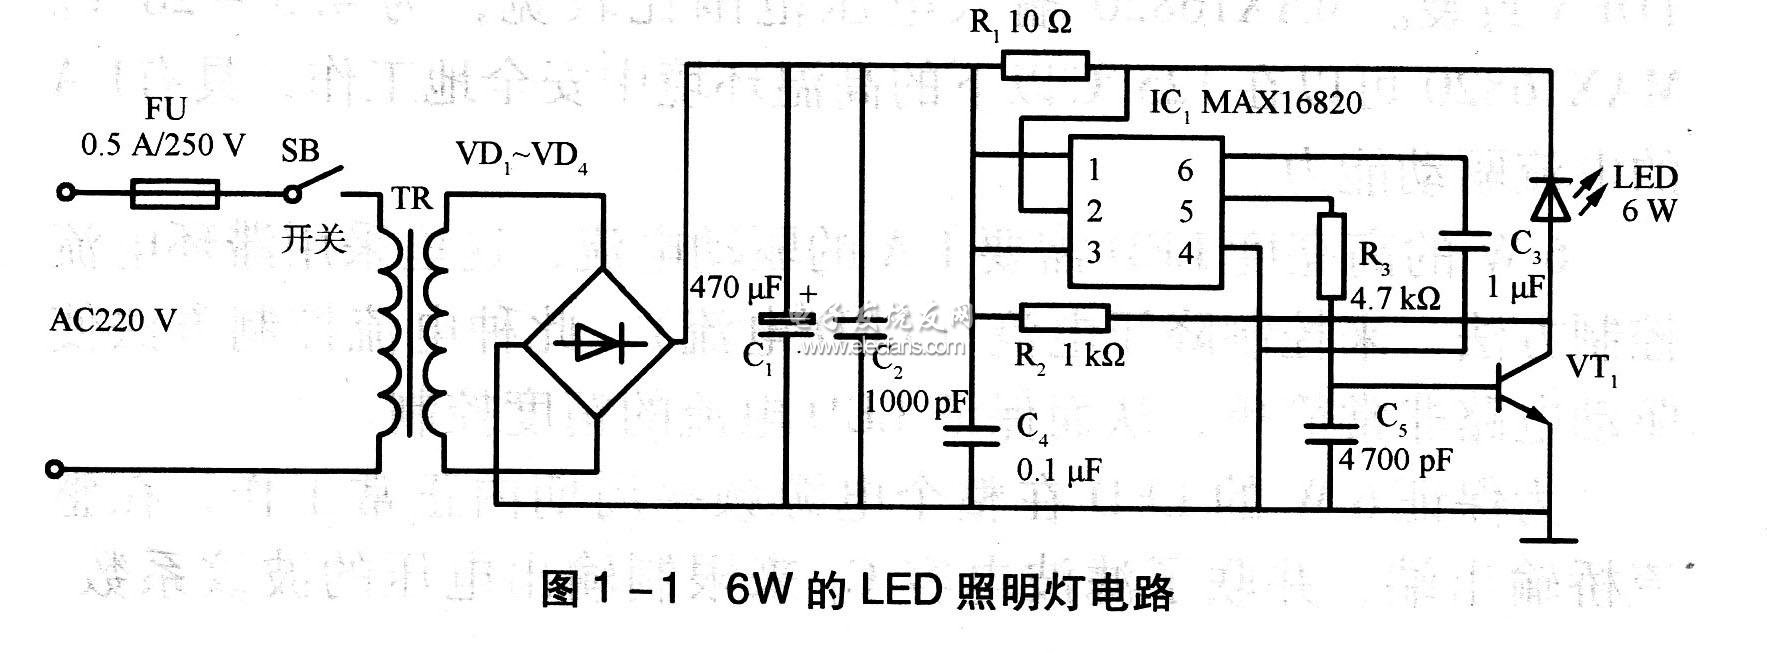 led灯驱动器原理图片